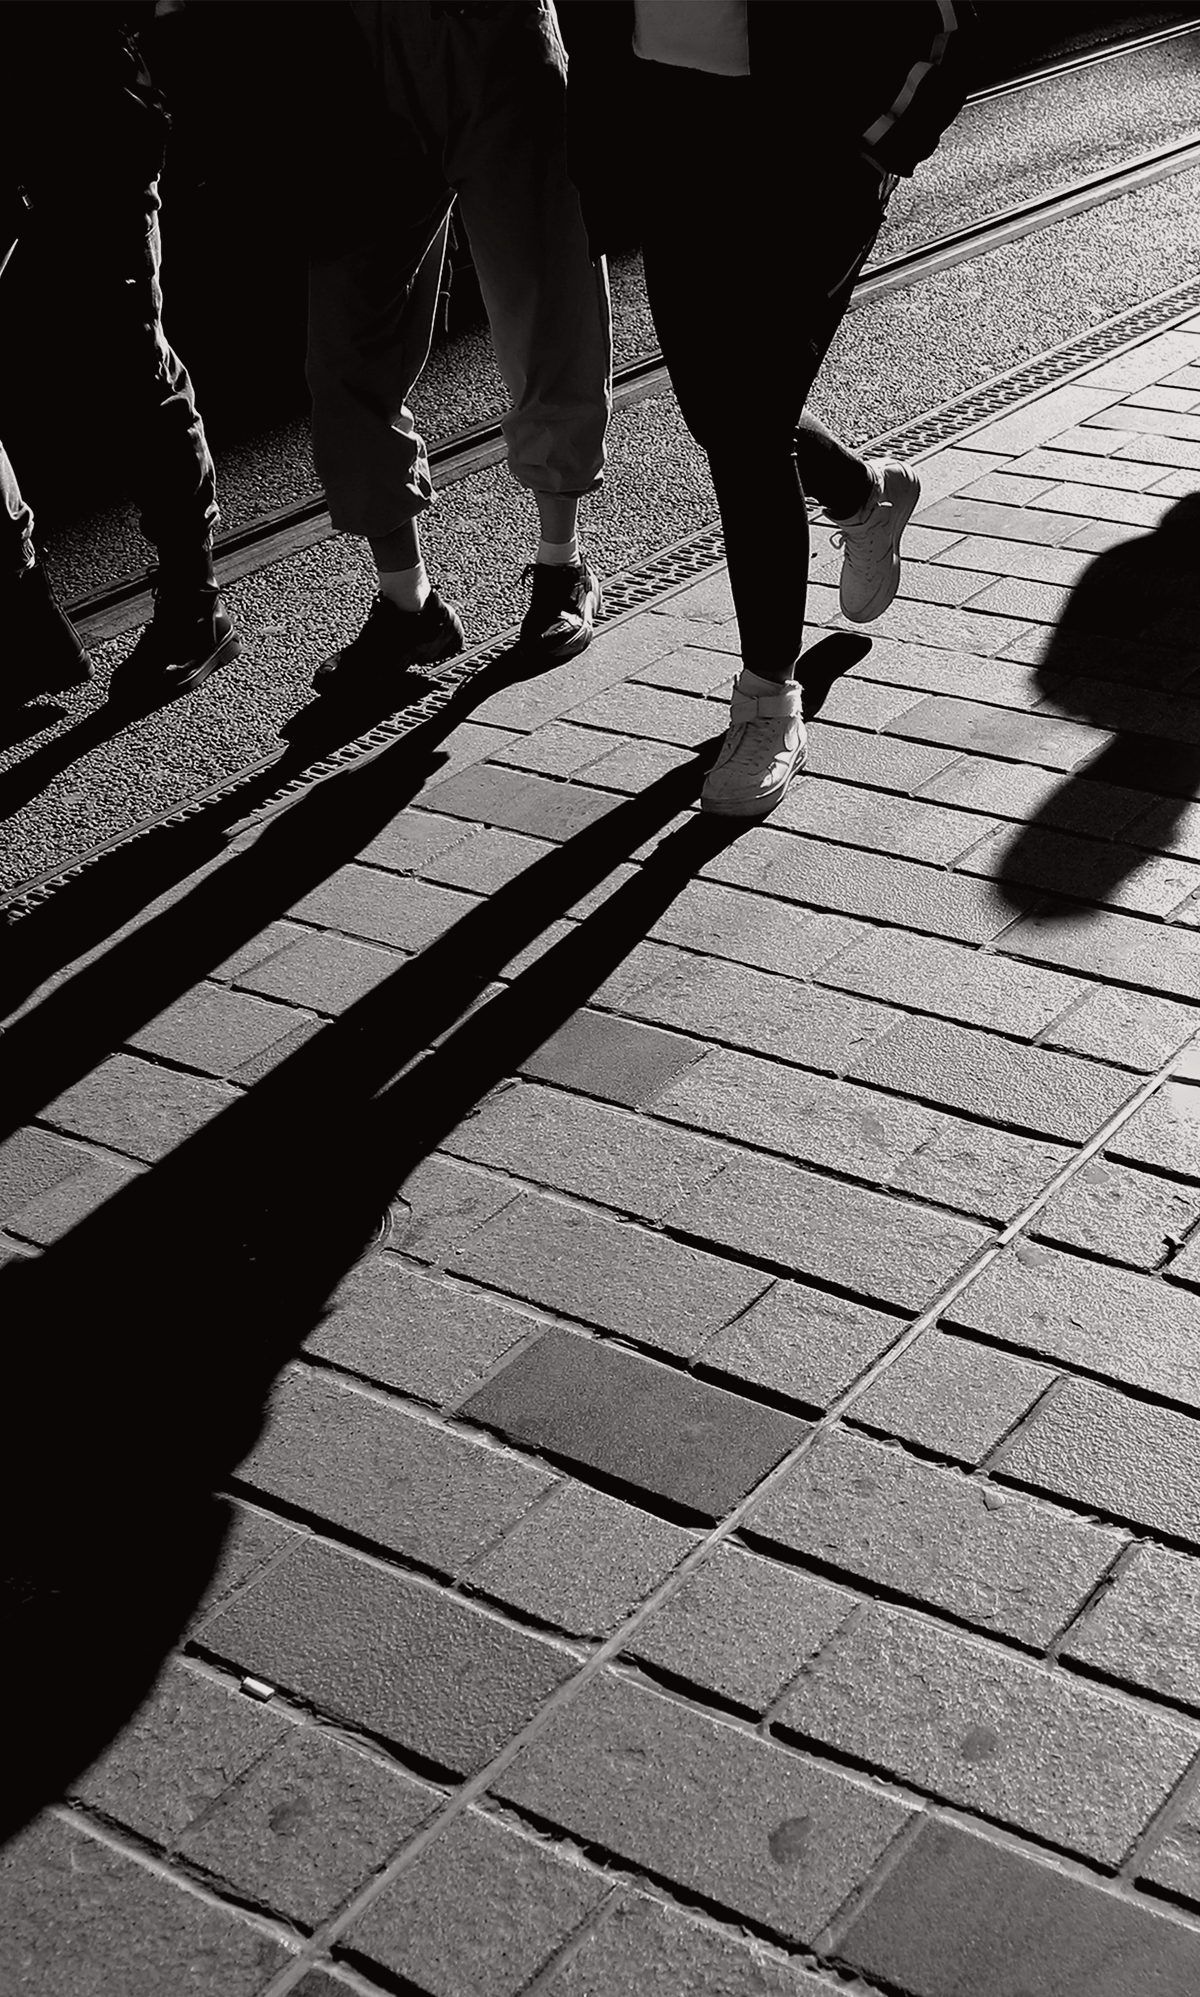 Walking feet and their shadows on a brick path